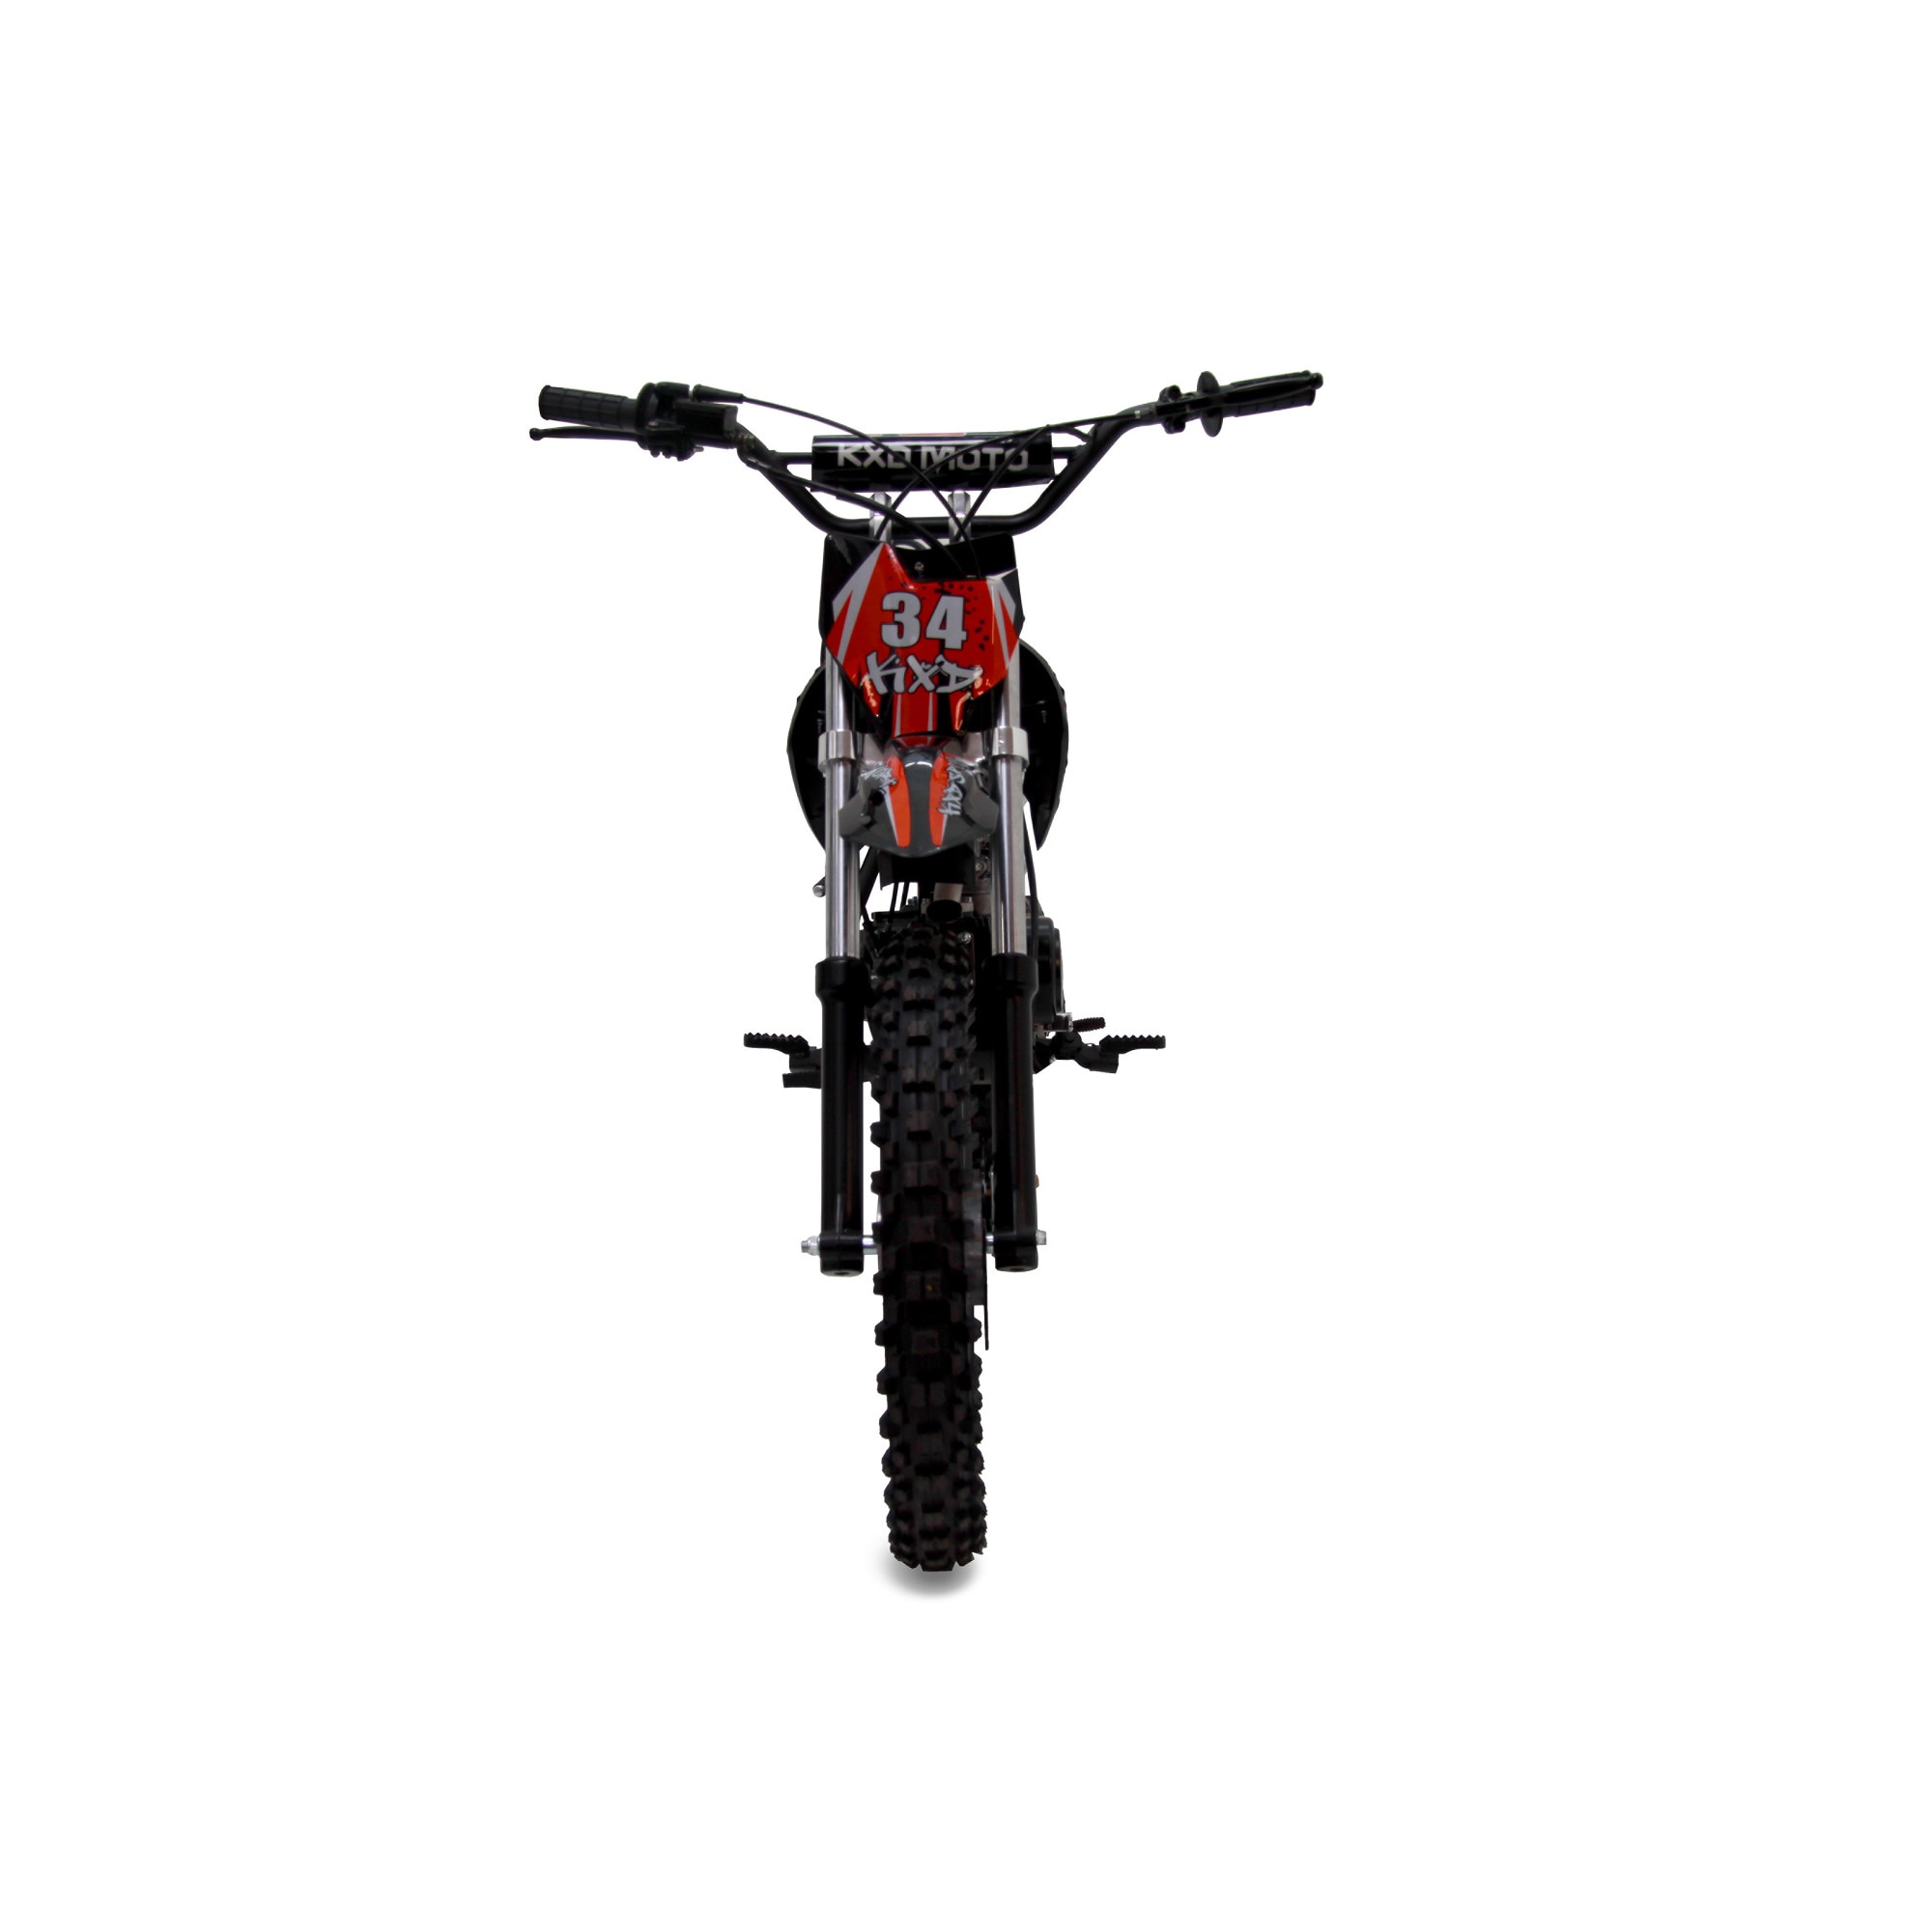 125cc DB 607 Dirt bike KXD Moto